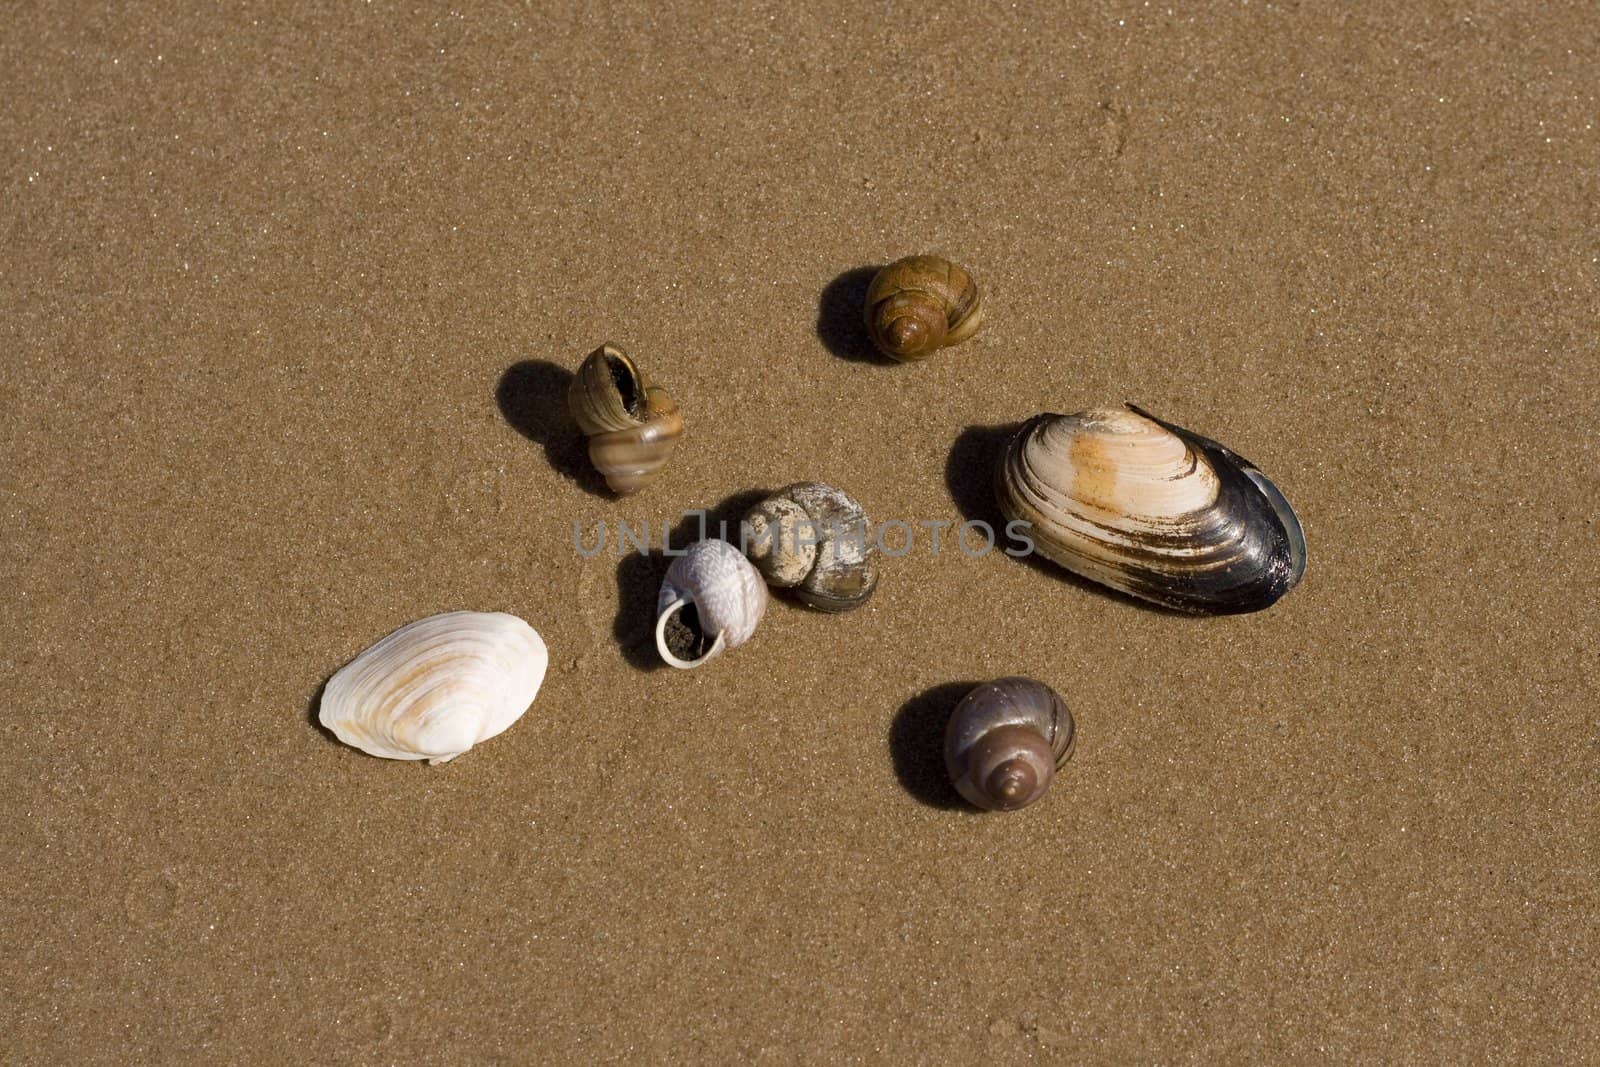 Sea shells on a wet sand